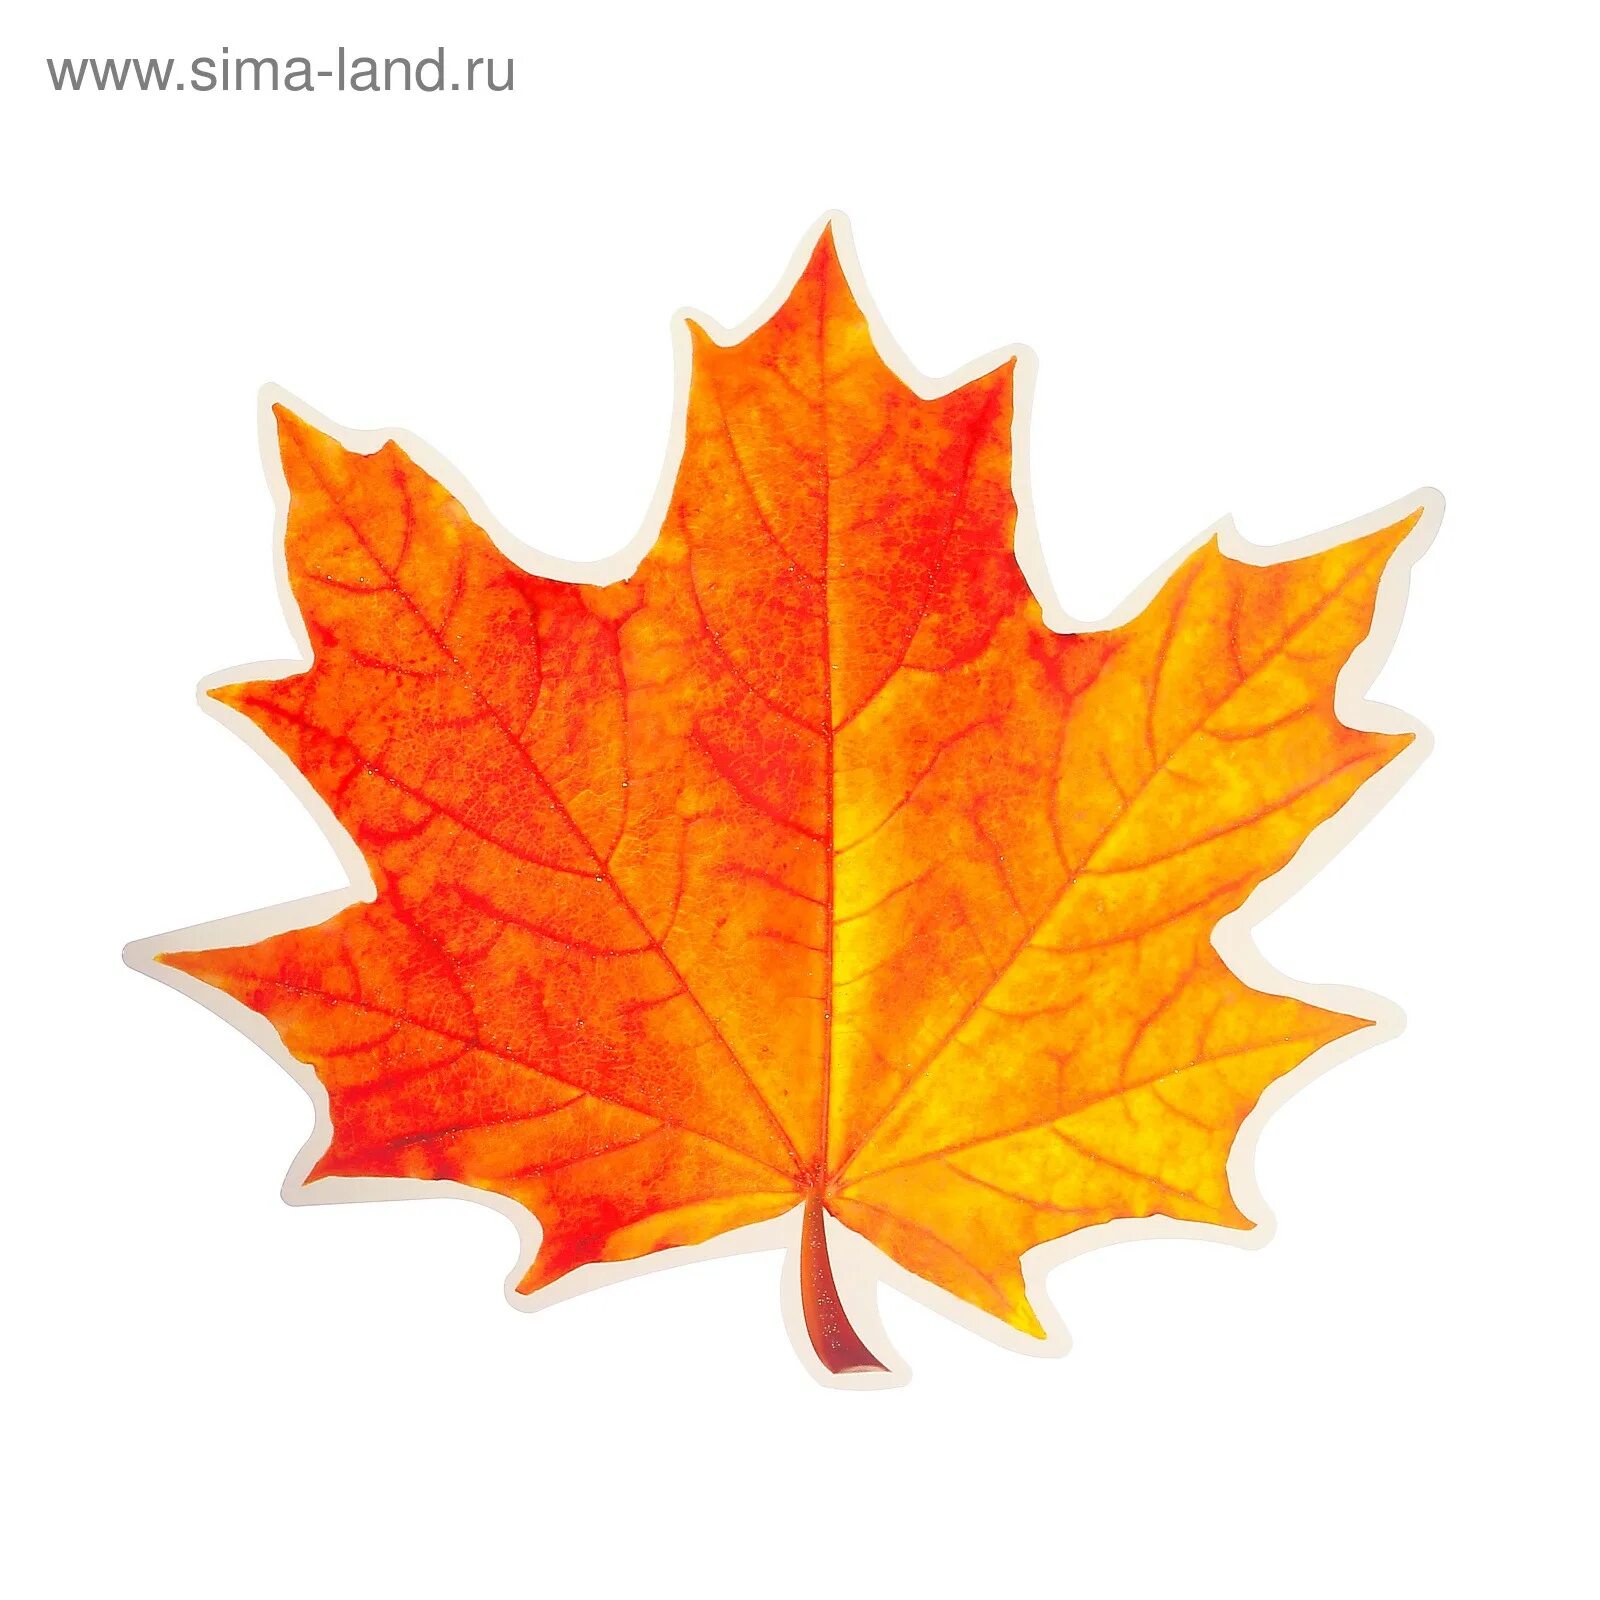 Листья клена 7. Осенние листочки. Кленовый лист. Кленовый лист цветной. Кленовый лист оранжевый.